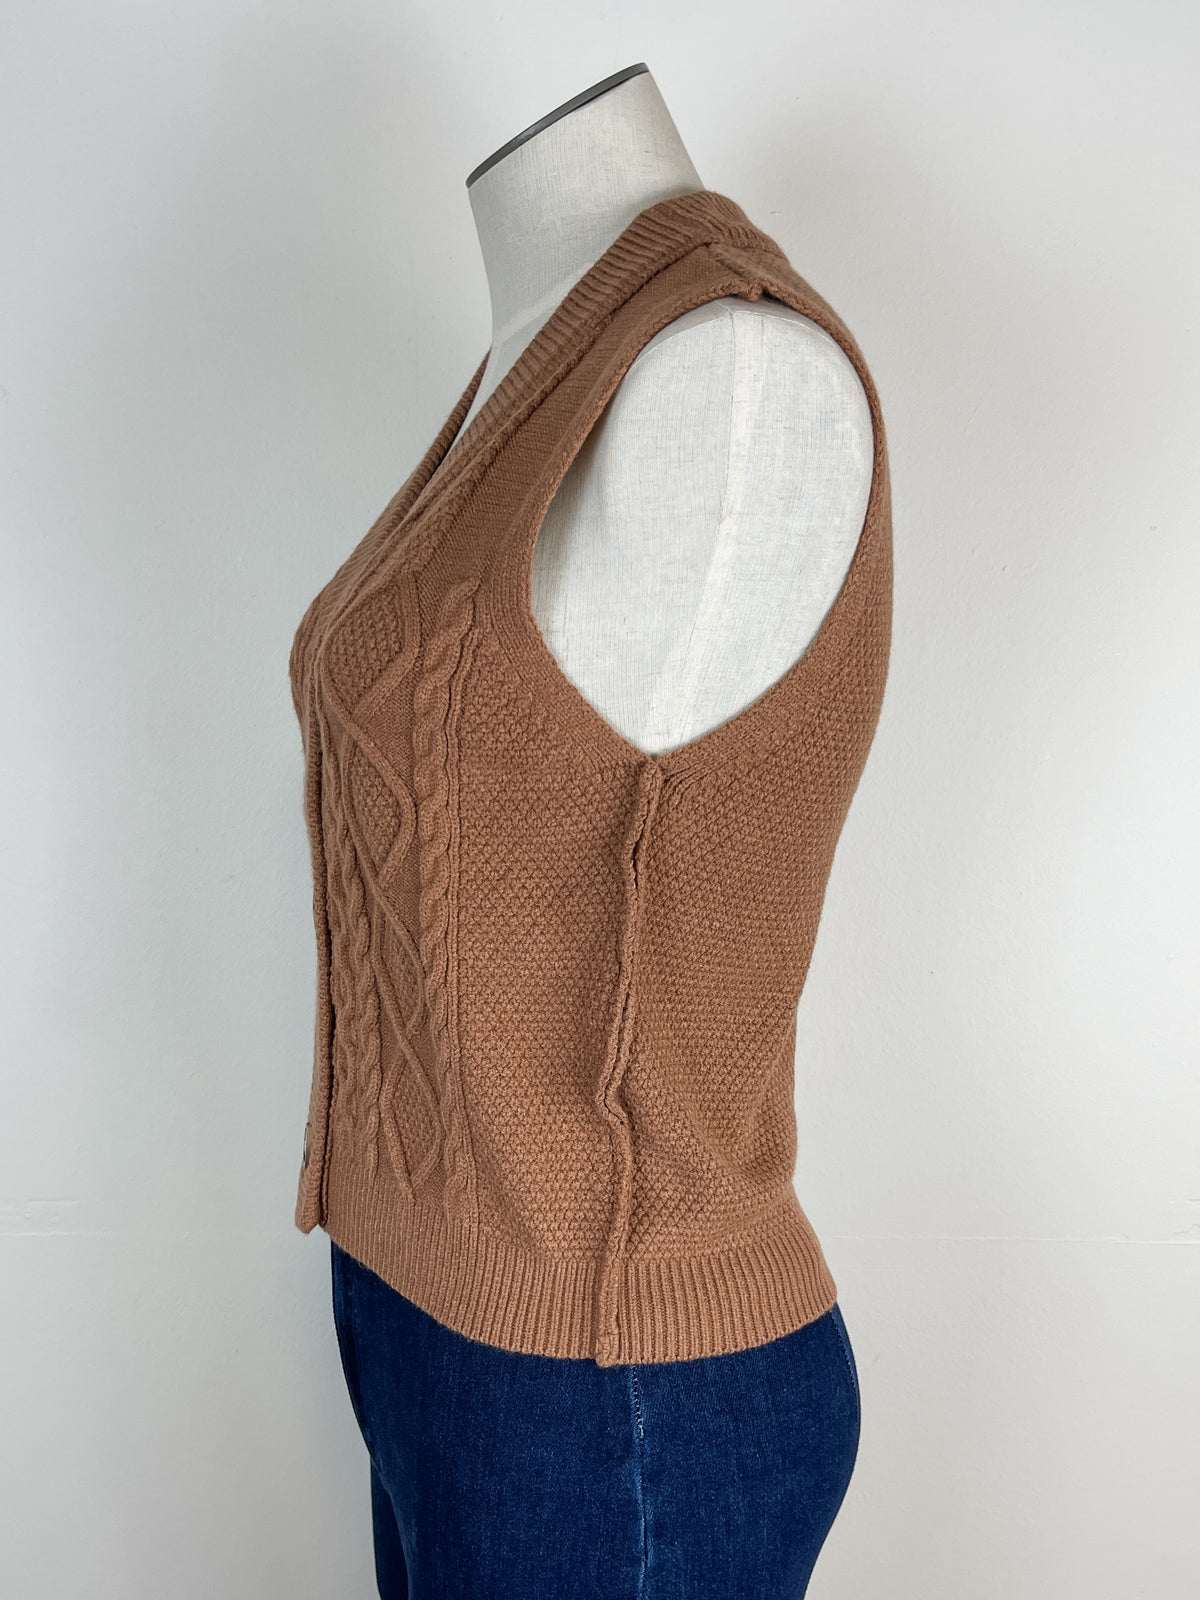 Rowan Sweater Vest in Mocha